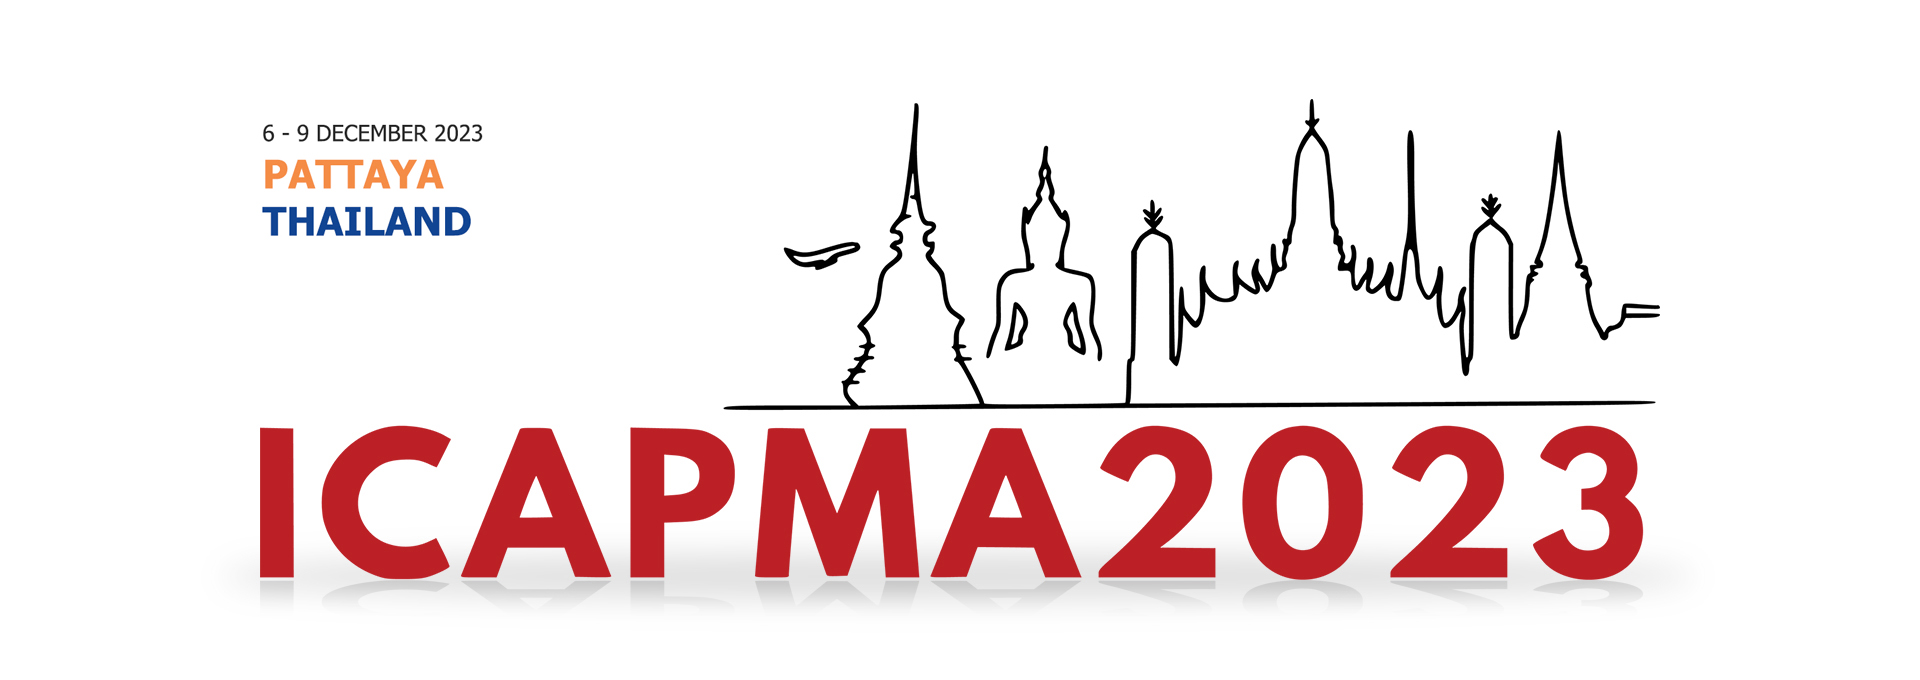 ประชุมวิชาการระดับนานาชาติ The 6th International Conference On Applied Physics and Materials Applications (ICAPMA2023)